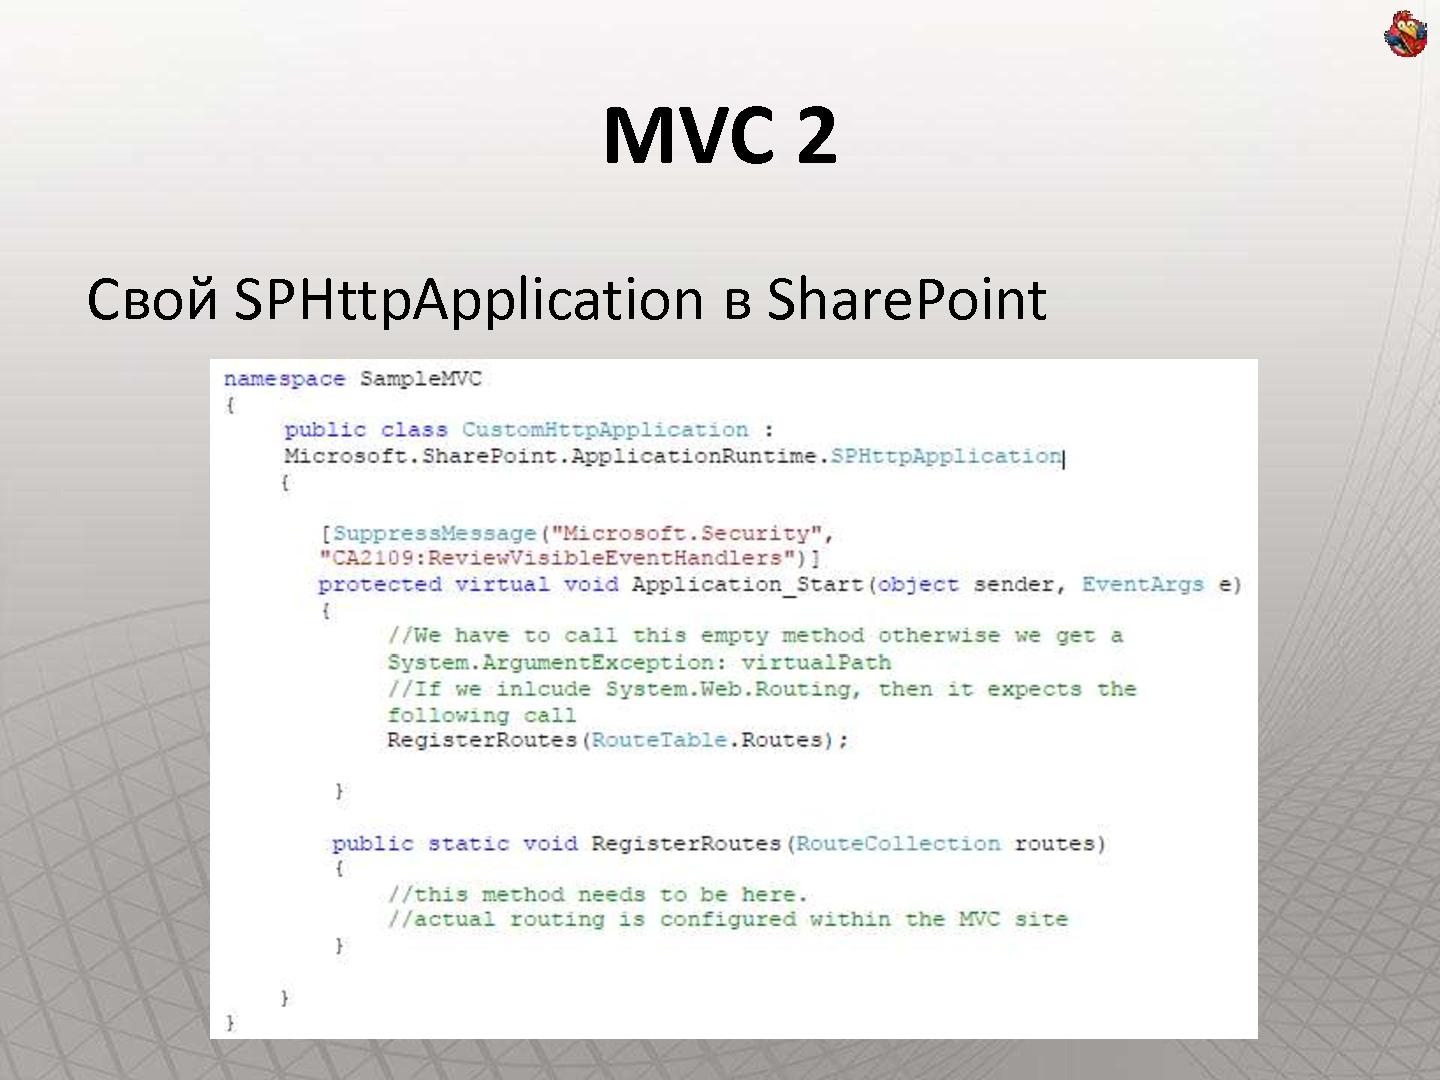 Файл:Как сделать интернет-сайт на SharePoint и не передумать на полпути (Владимир Колесников, ADD-2011).pdf